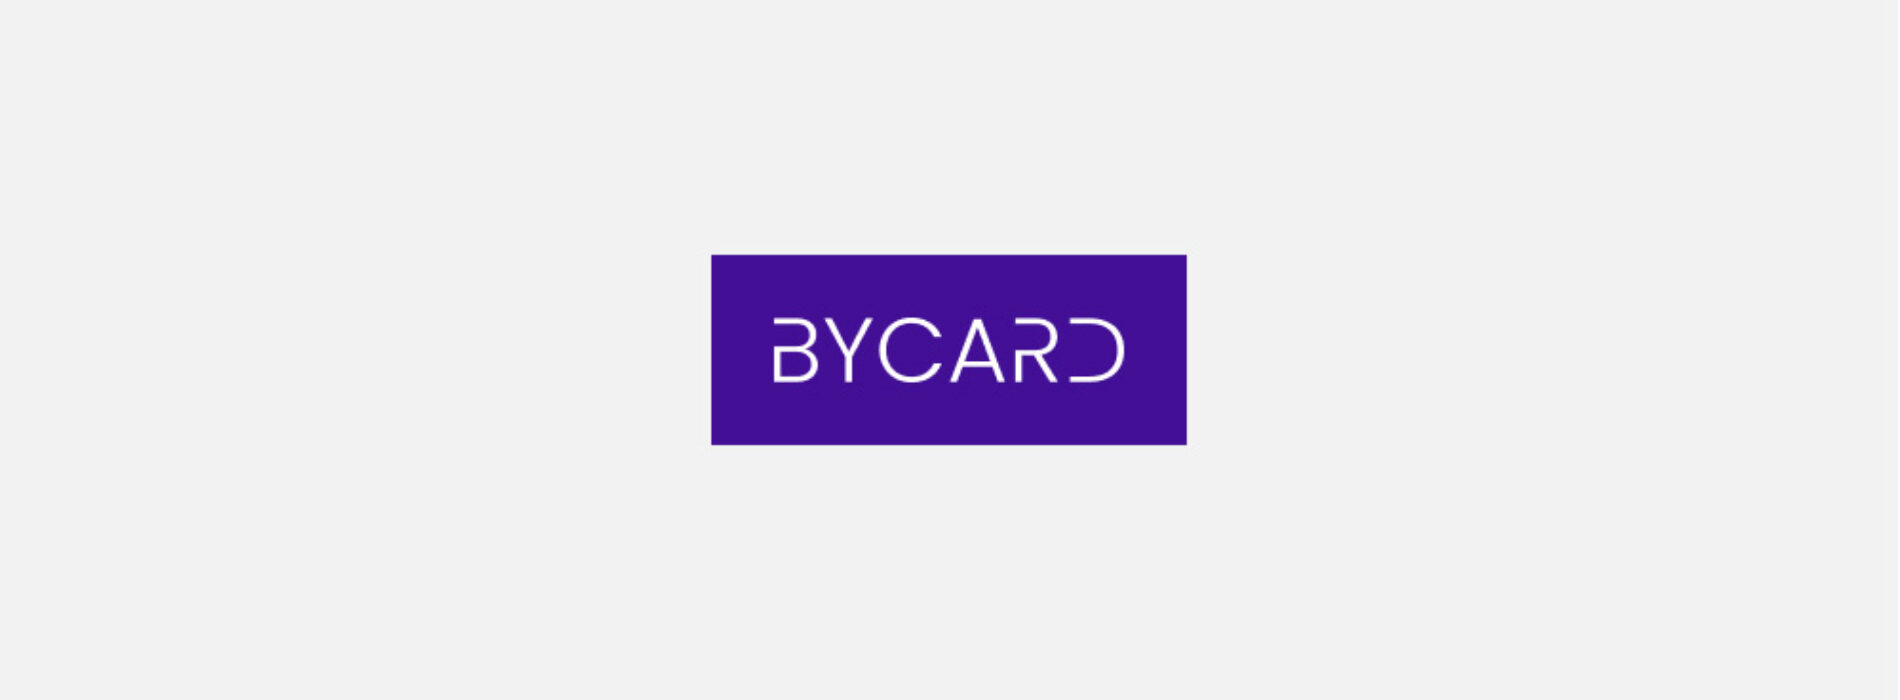 Bycard – sprawdziliśmy ofertę i opinie klientów